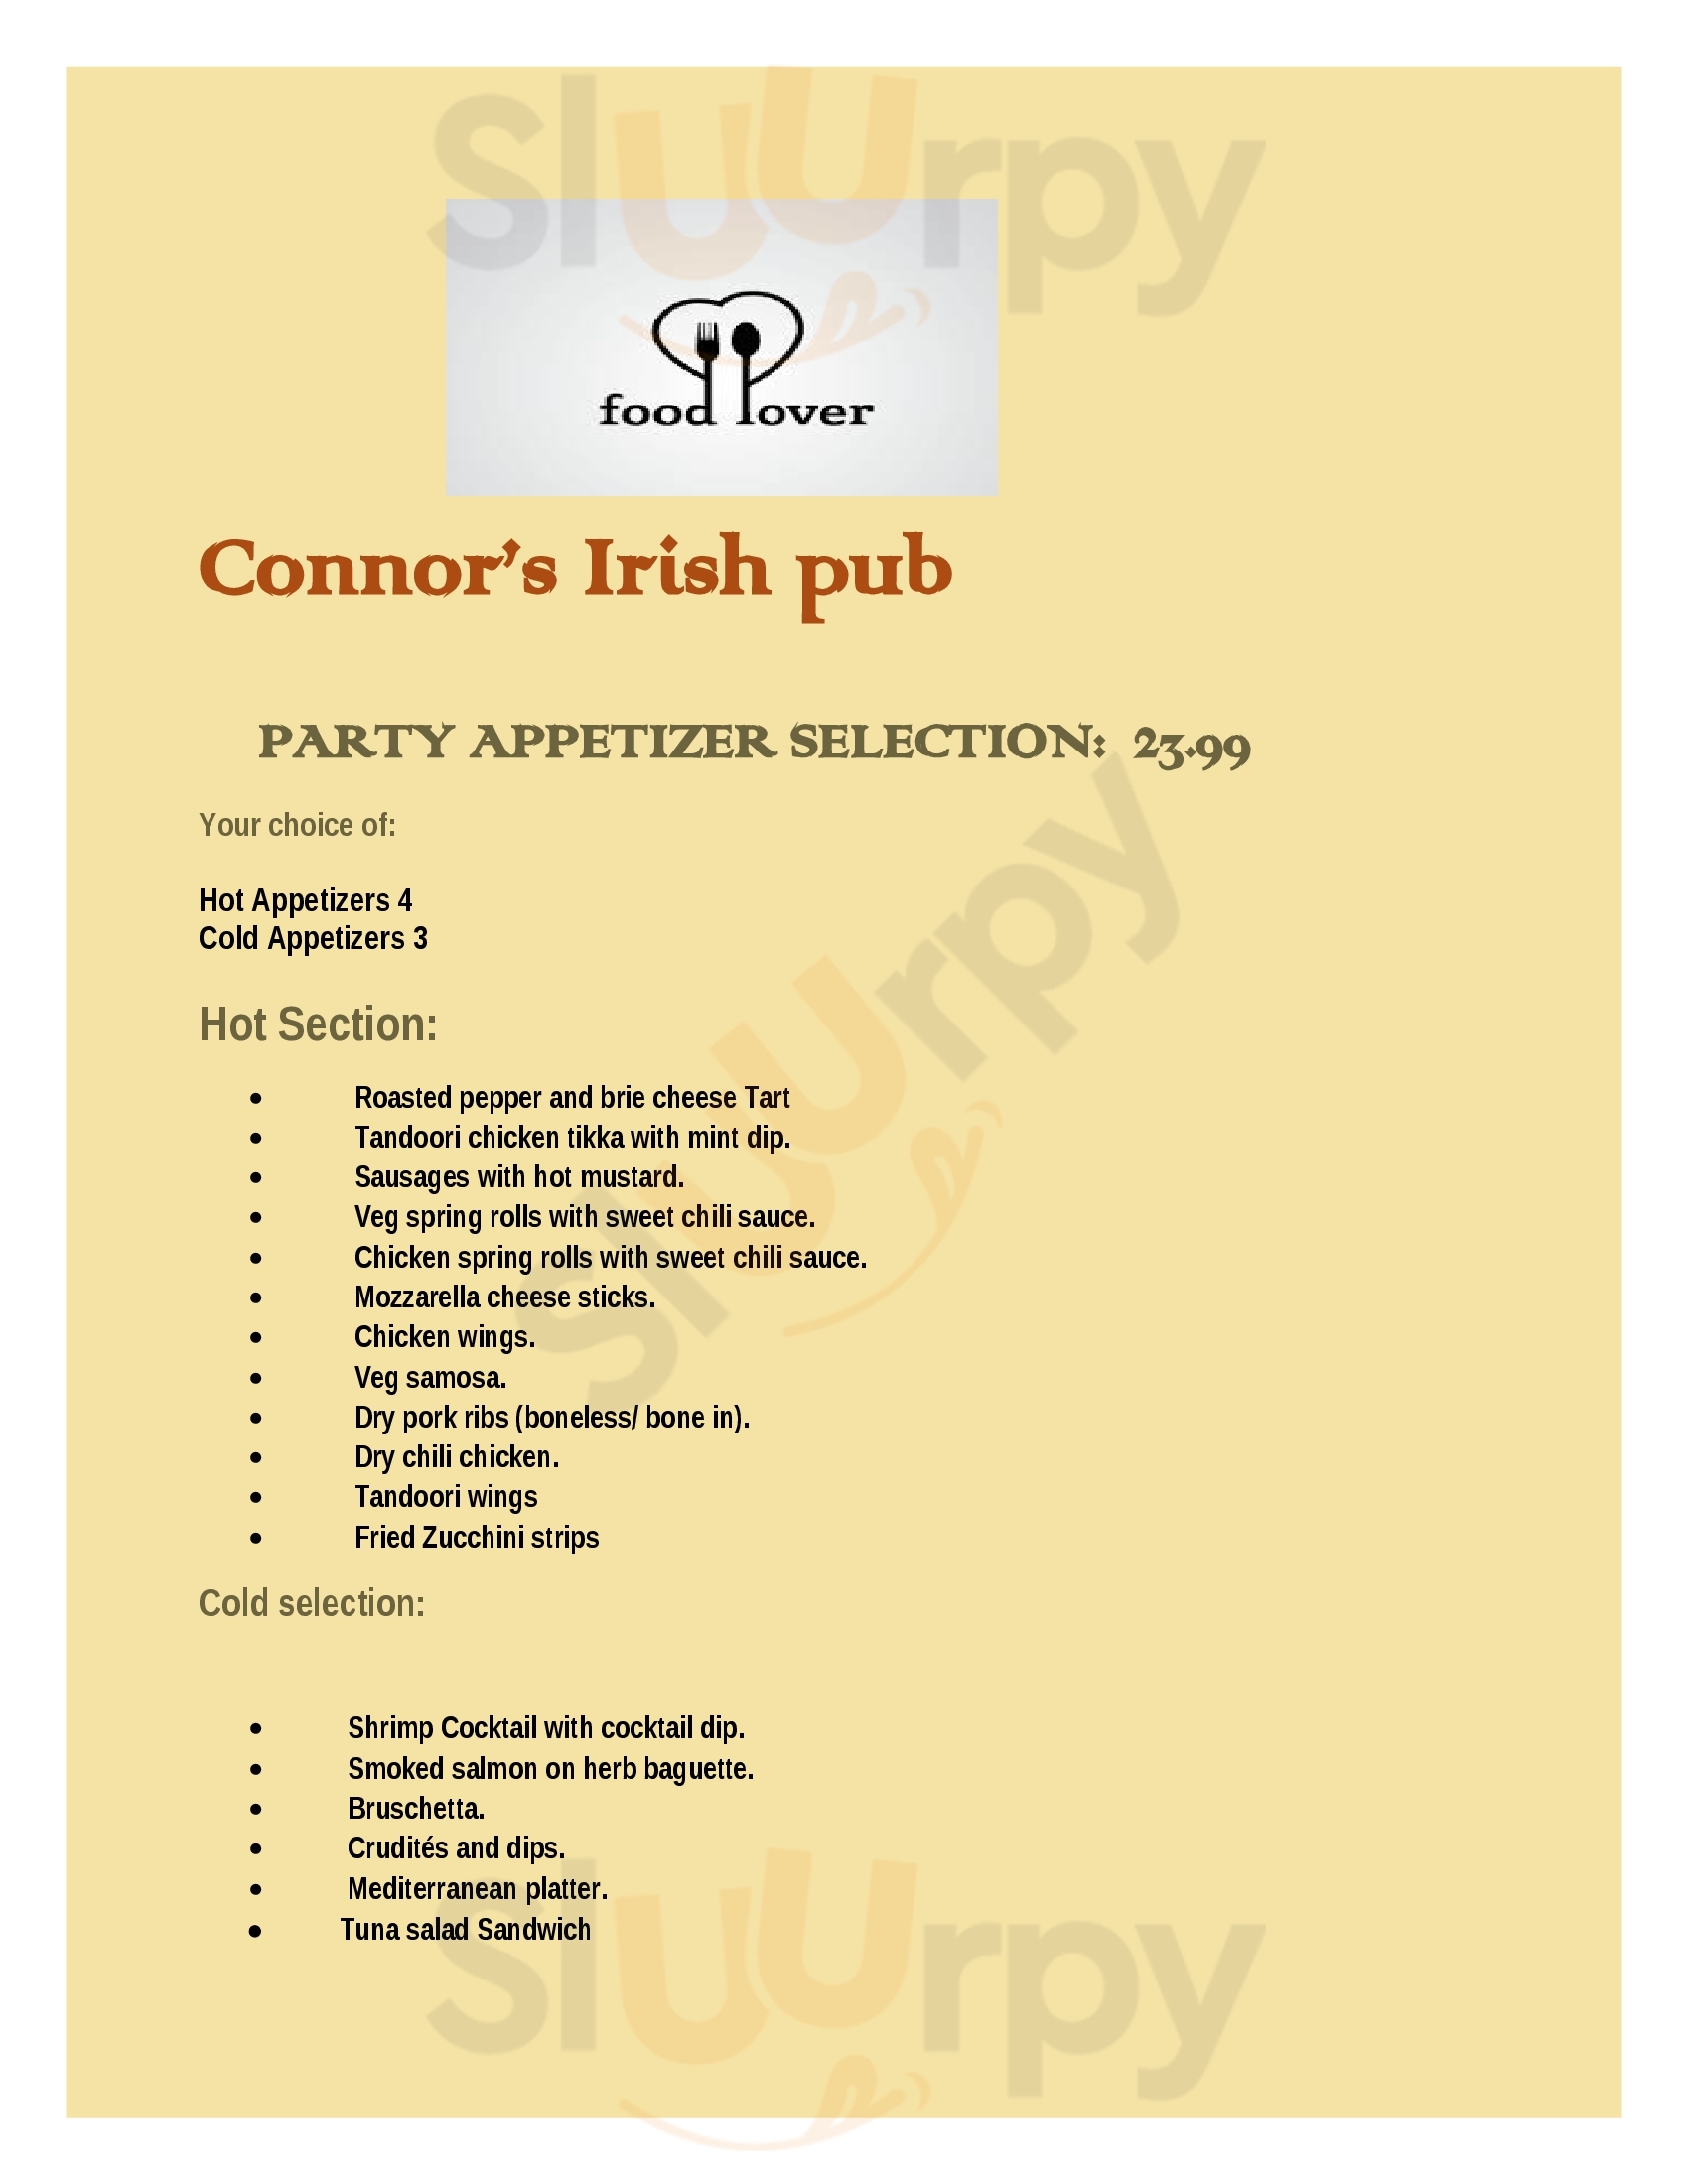 Connor’s Irish Pub & Grill St. Albert Menu - 1